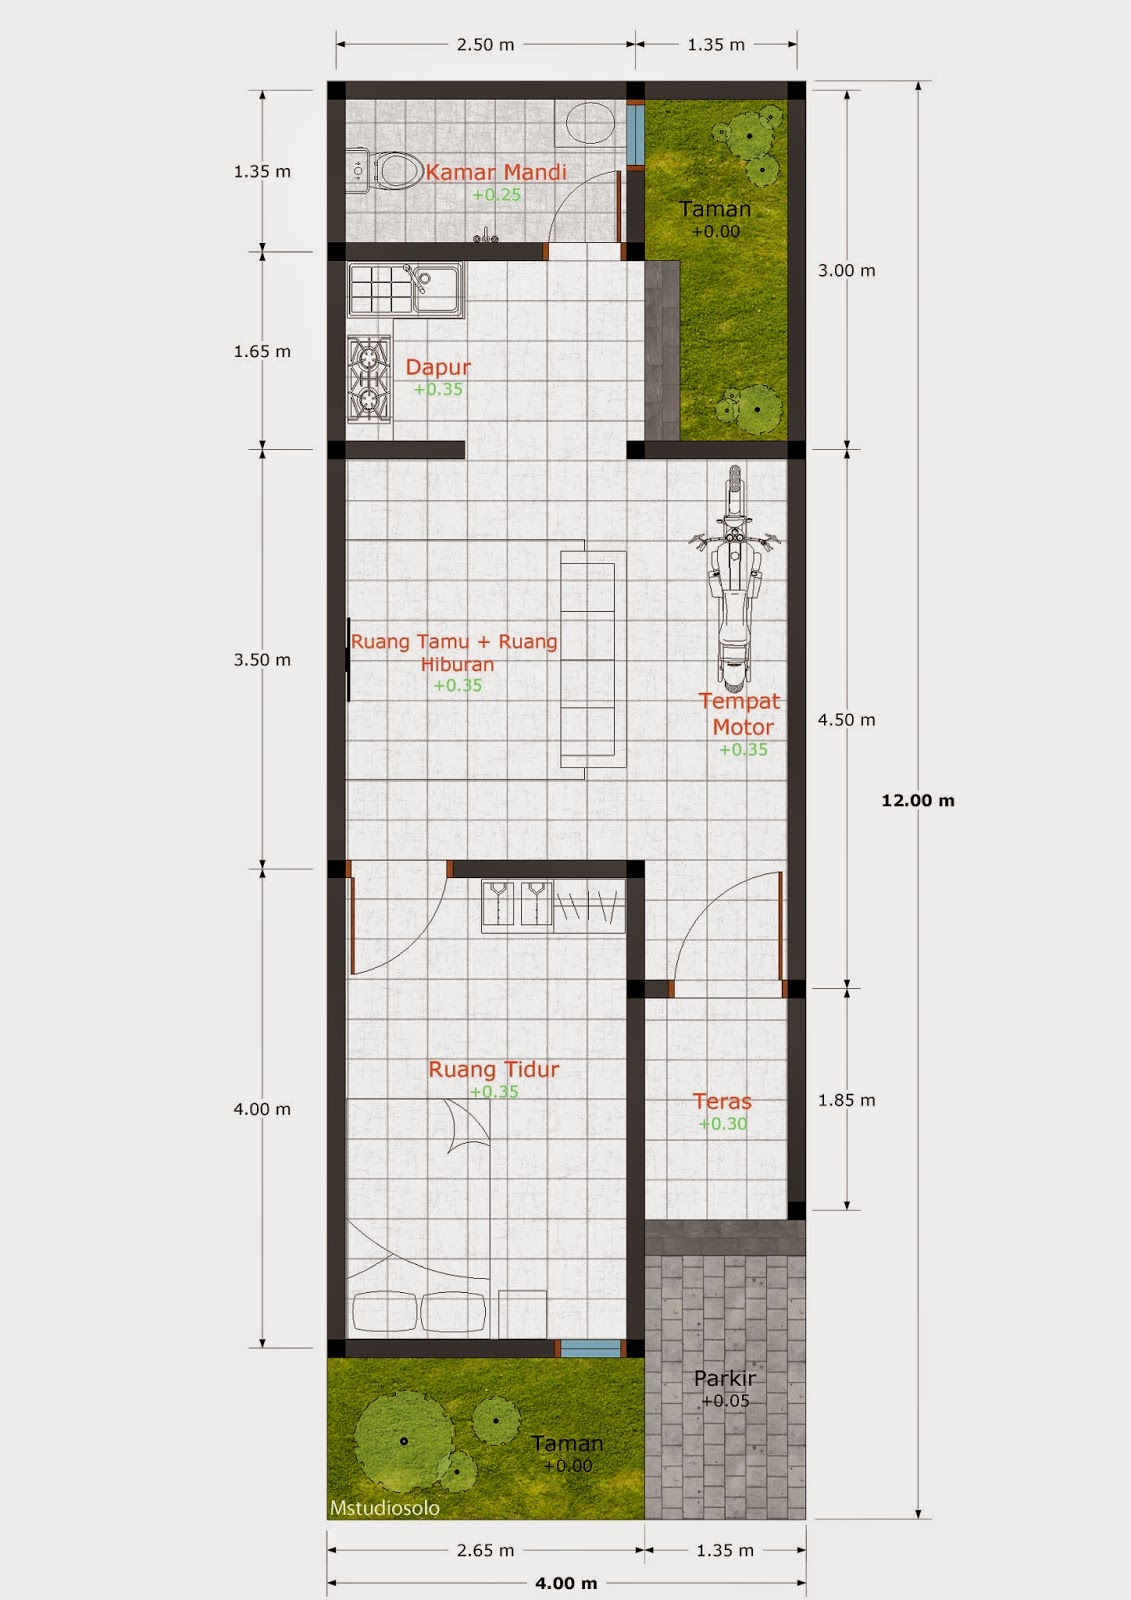 67 Desain Rumah Minimalis Ukuran 4x12 Desain Rumah 